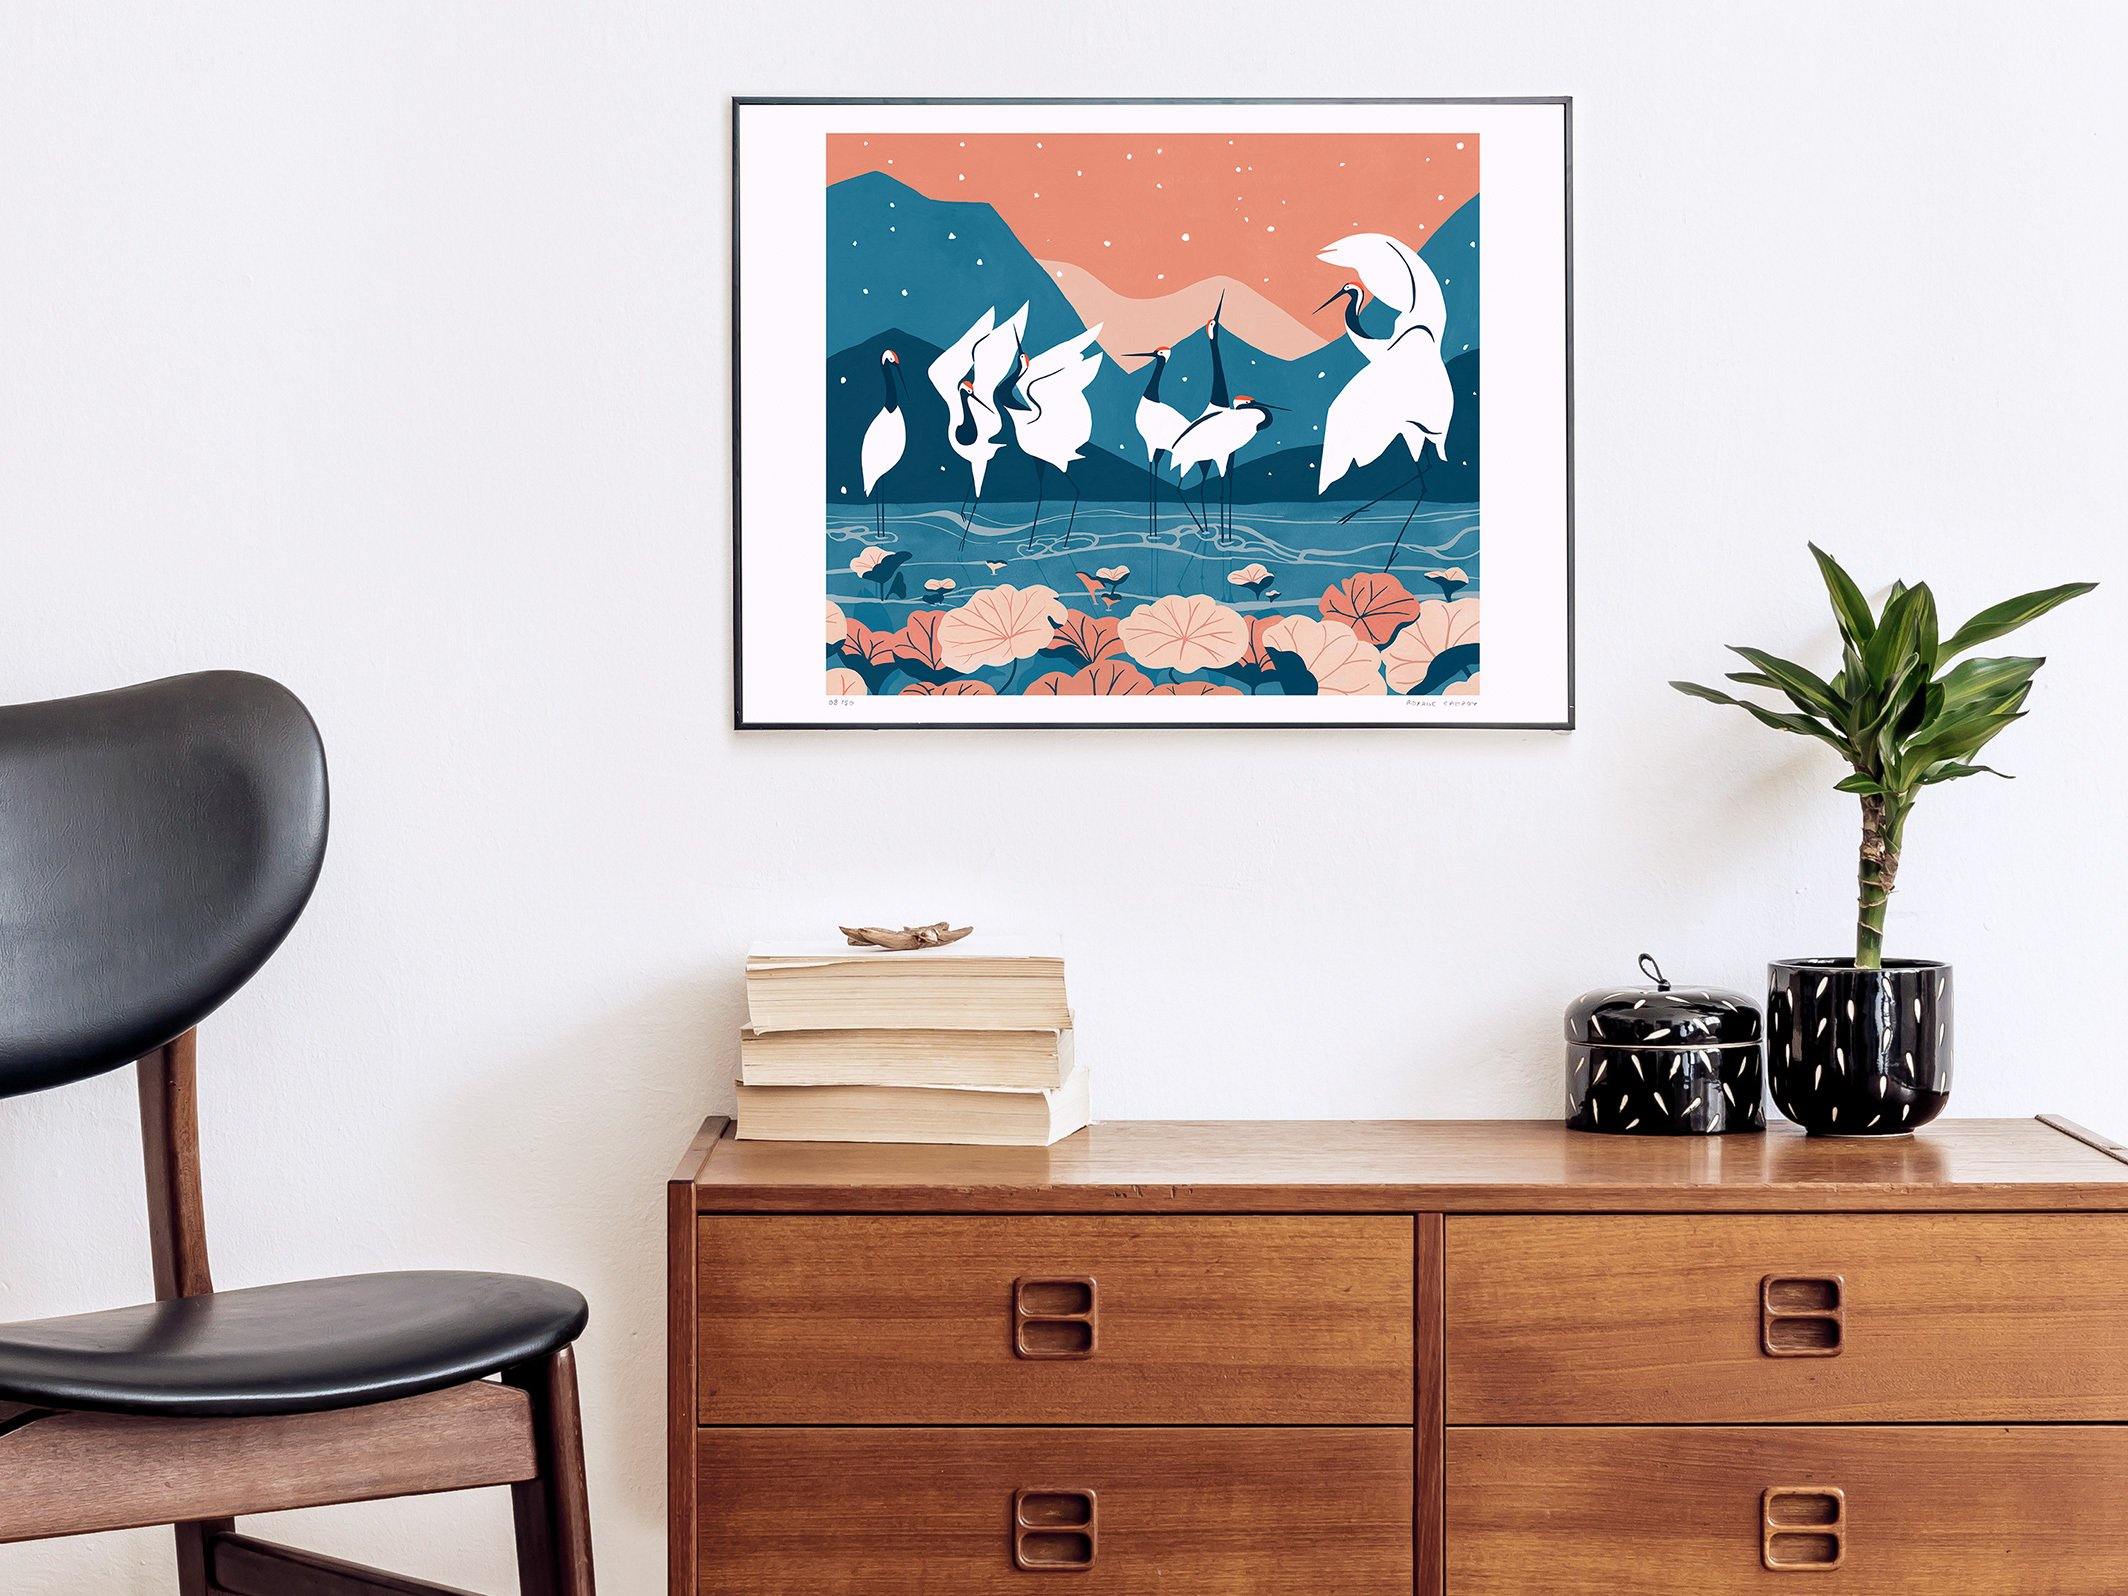 Photographie d'un salon nordique avec une affiche en tirage d'art série limité colorée bleu et corail, dessinée par Roxane Campoy illustrant des grues japonaises.